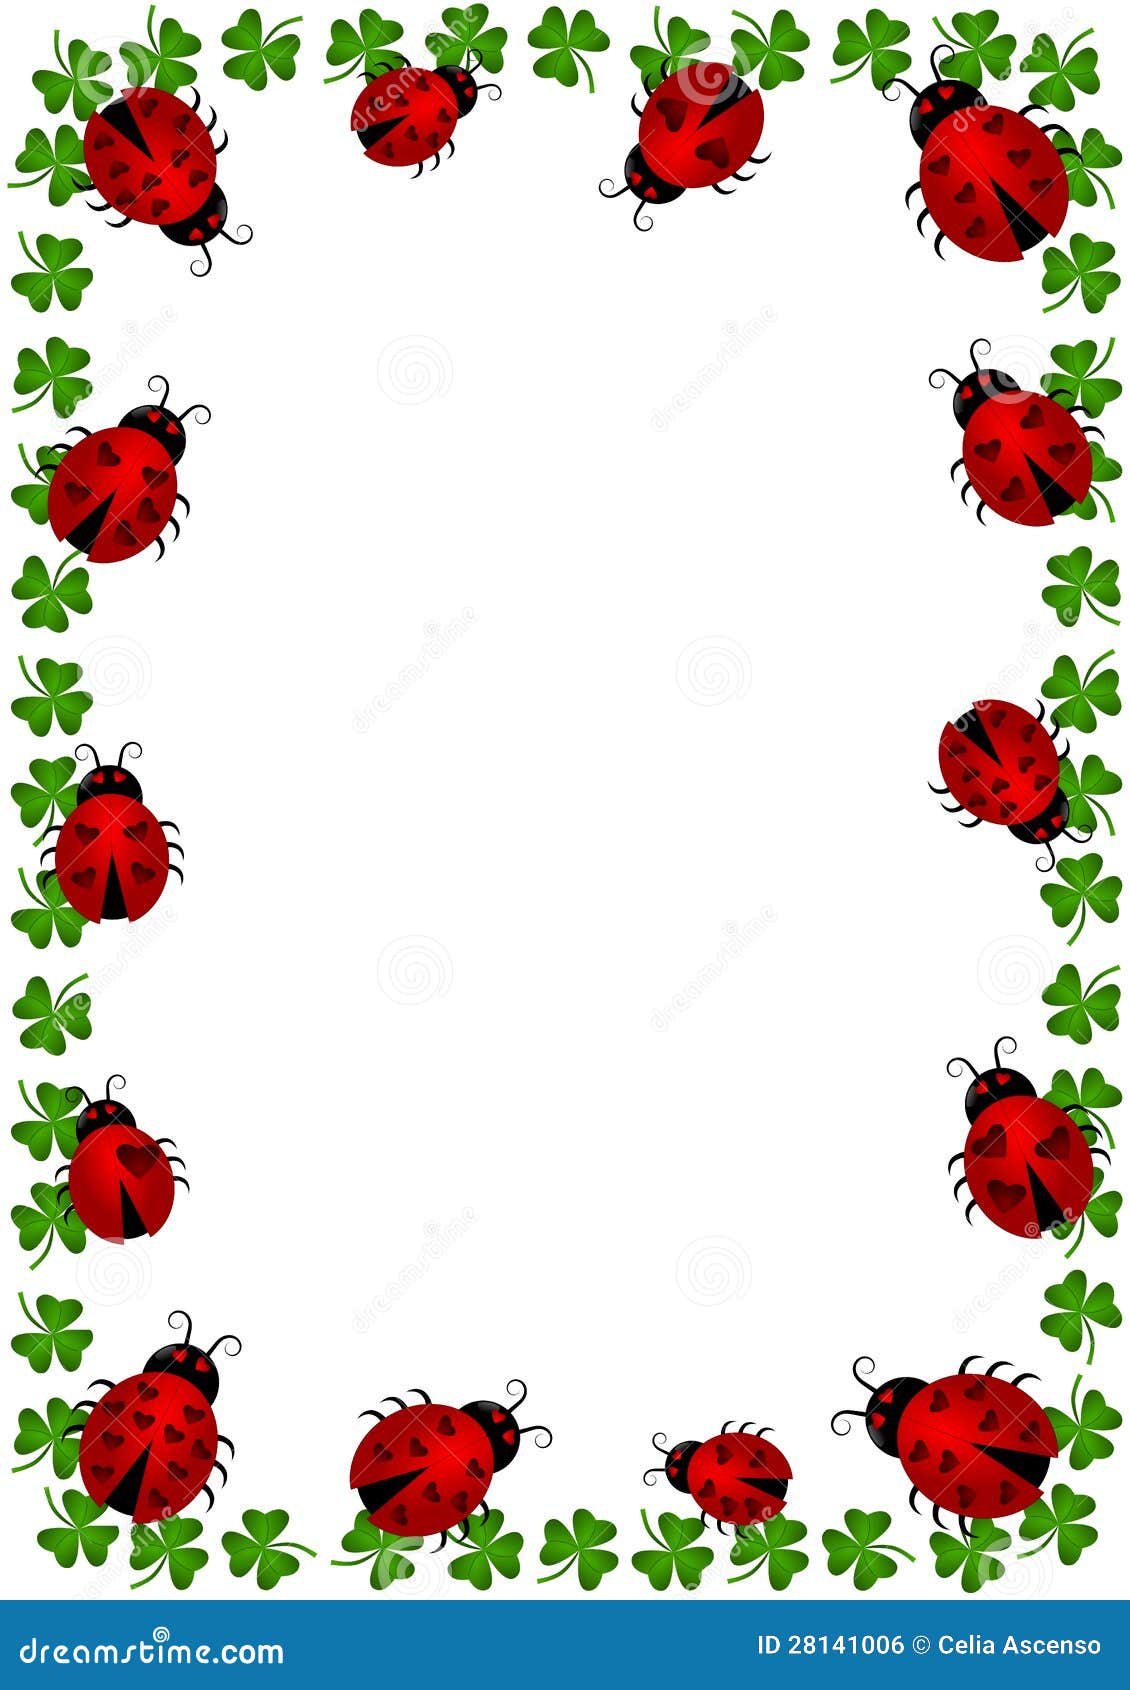 ladybug border clip art - photo #6